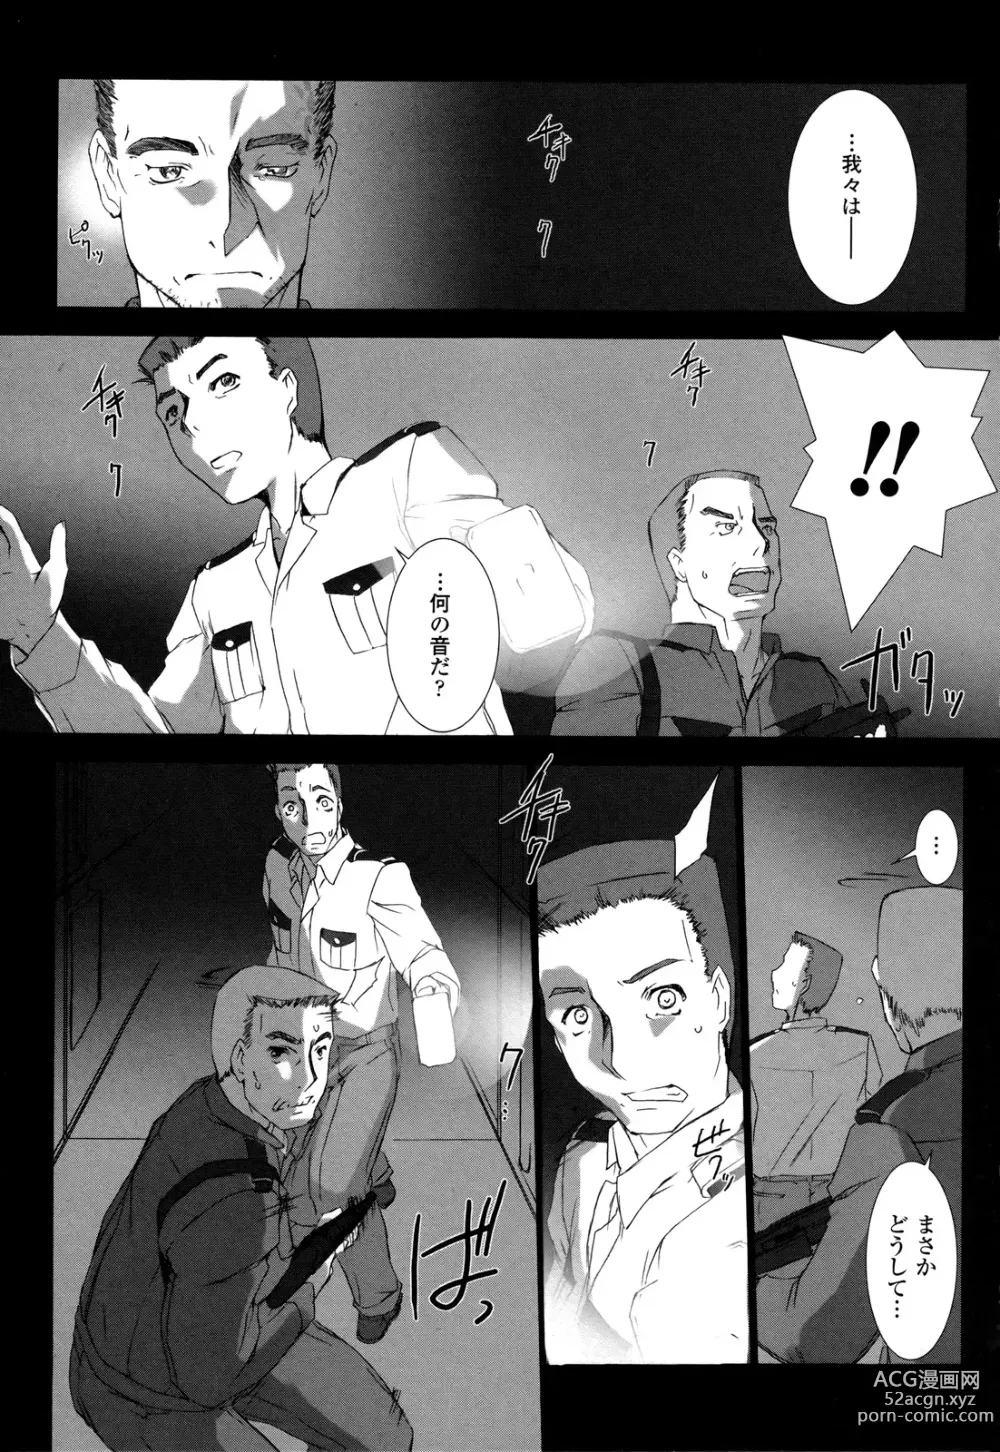 Page 180 of manga Ziggurat 2